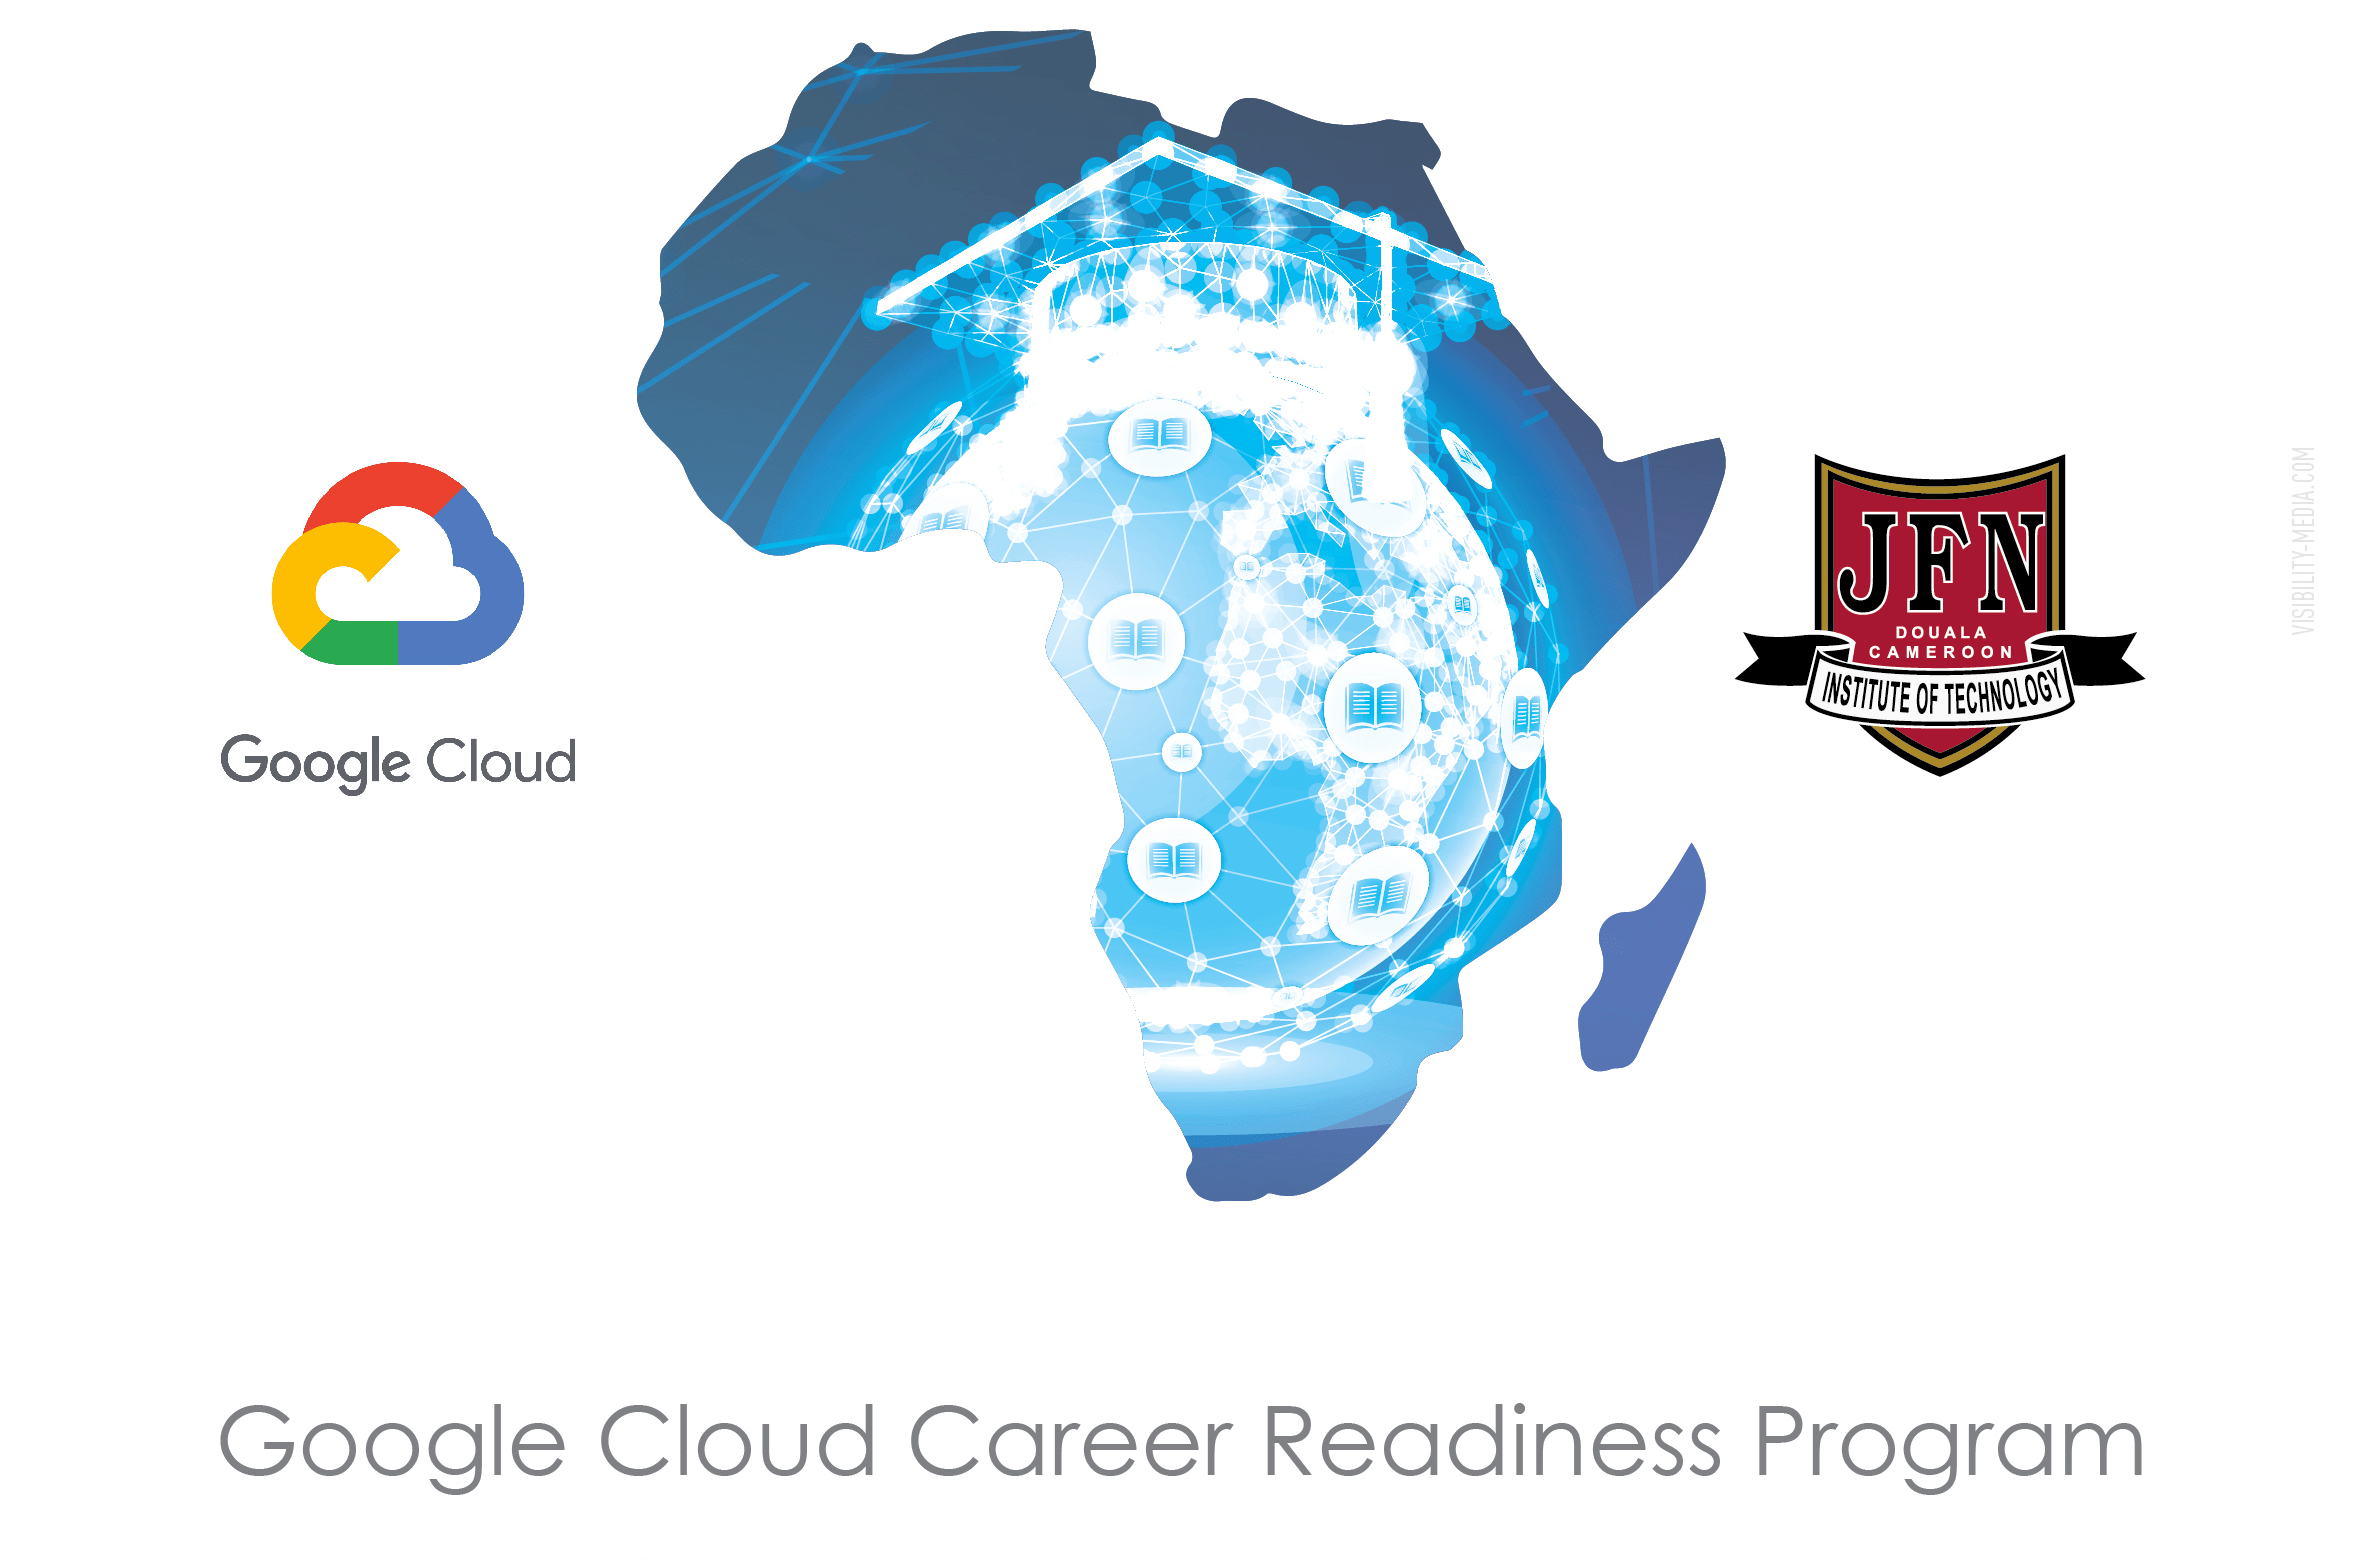 JFN-IT et Google Cloud scellent leur partenariat stratégique pour la formation aux technologies de Cloud Computing ce 02 novembre 2021 à Douala